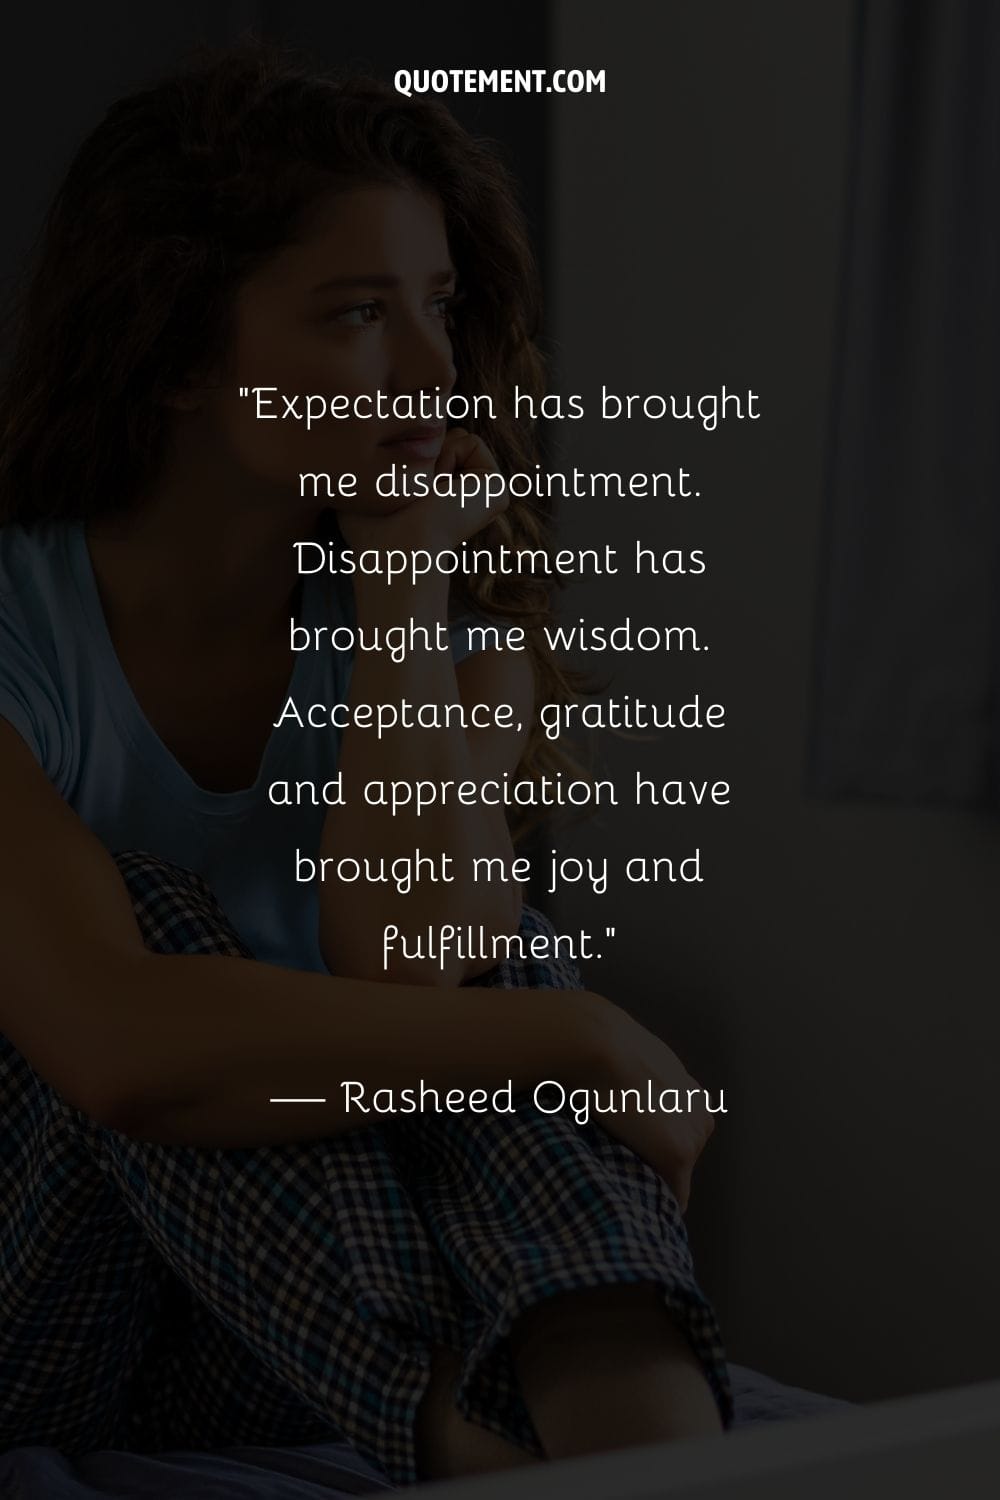 La decepción me ha aportado sabiduría. La aceptación, la gratitud y el aprecio me han traído alegría y satisfacción.